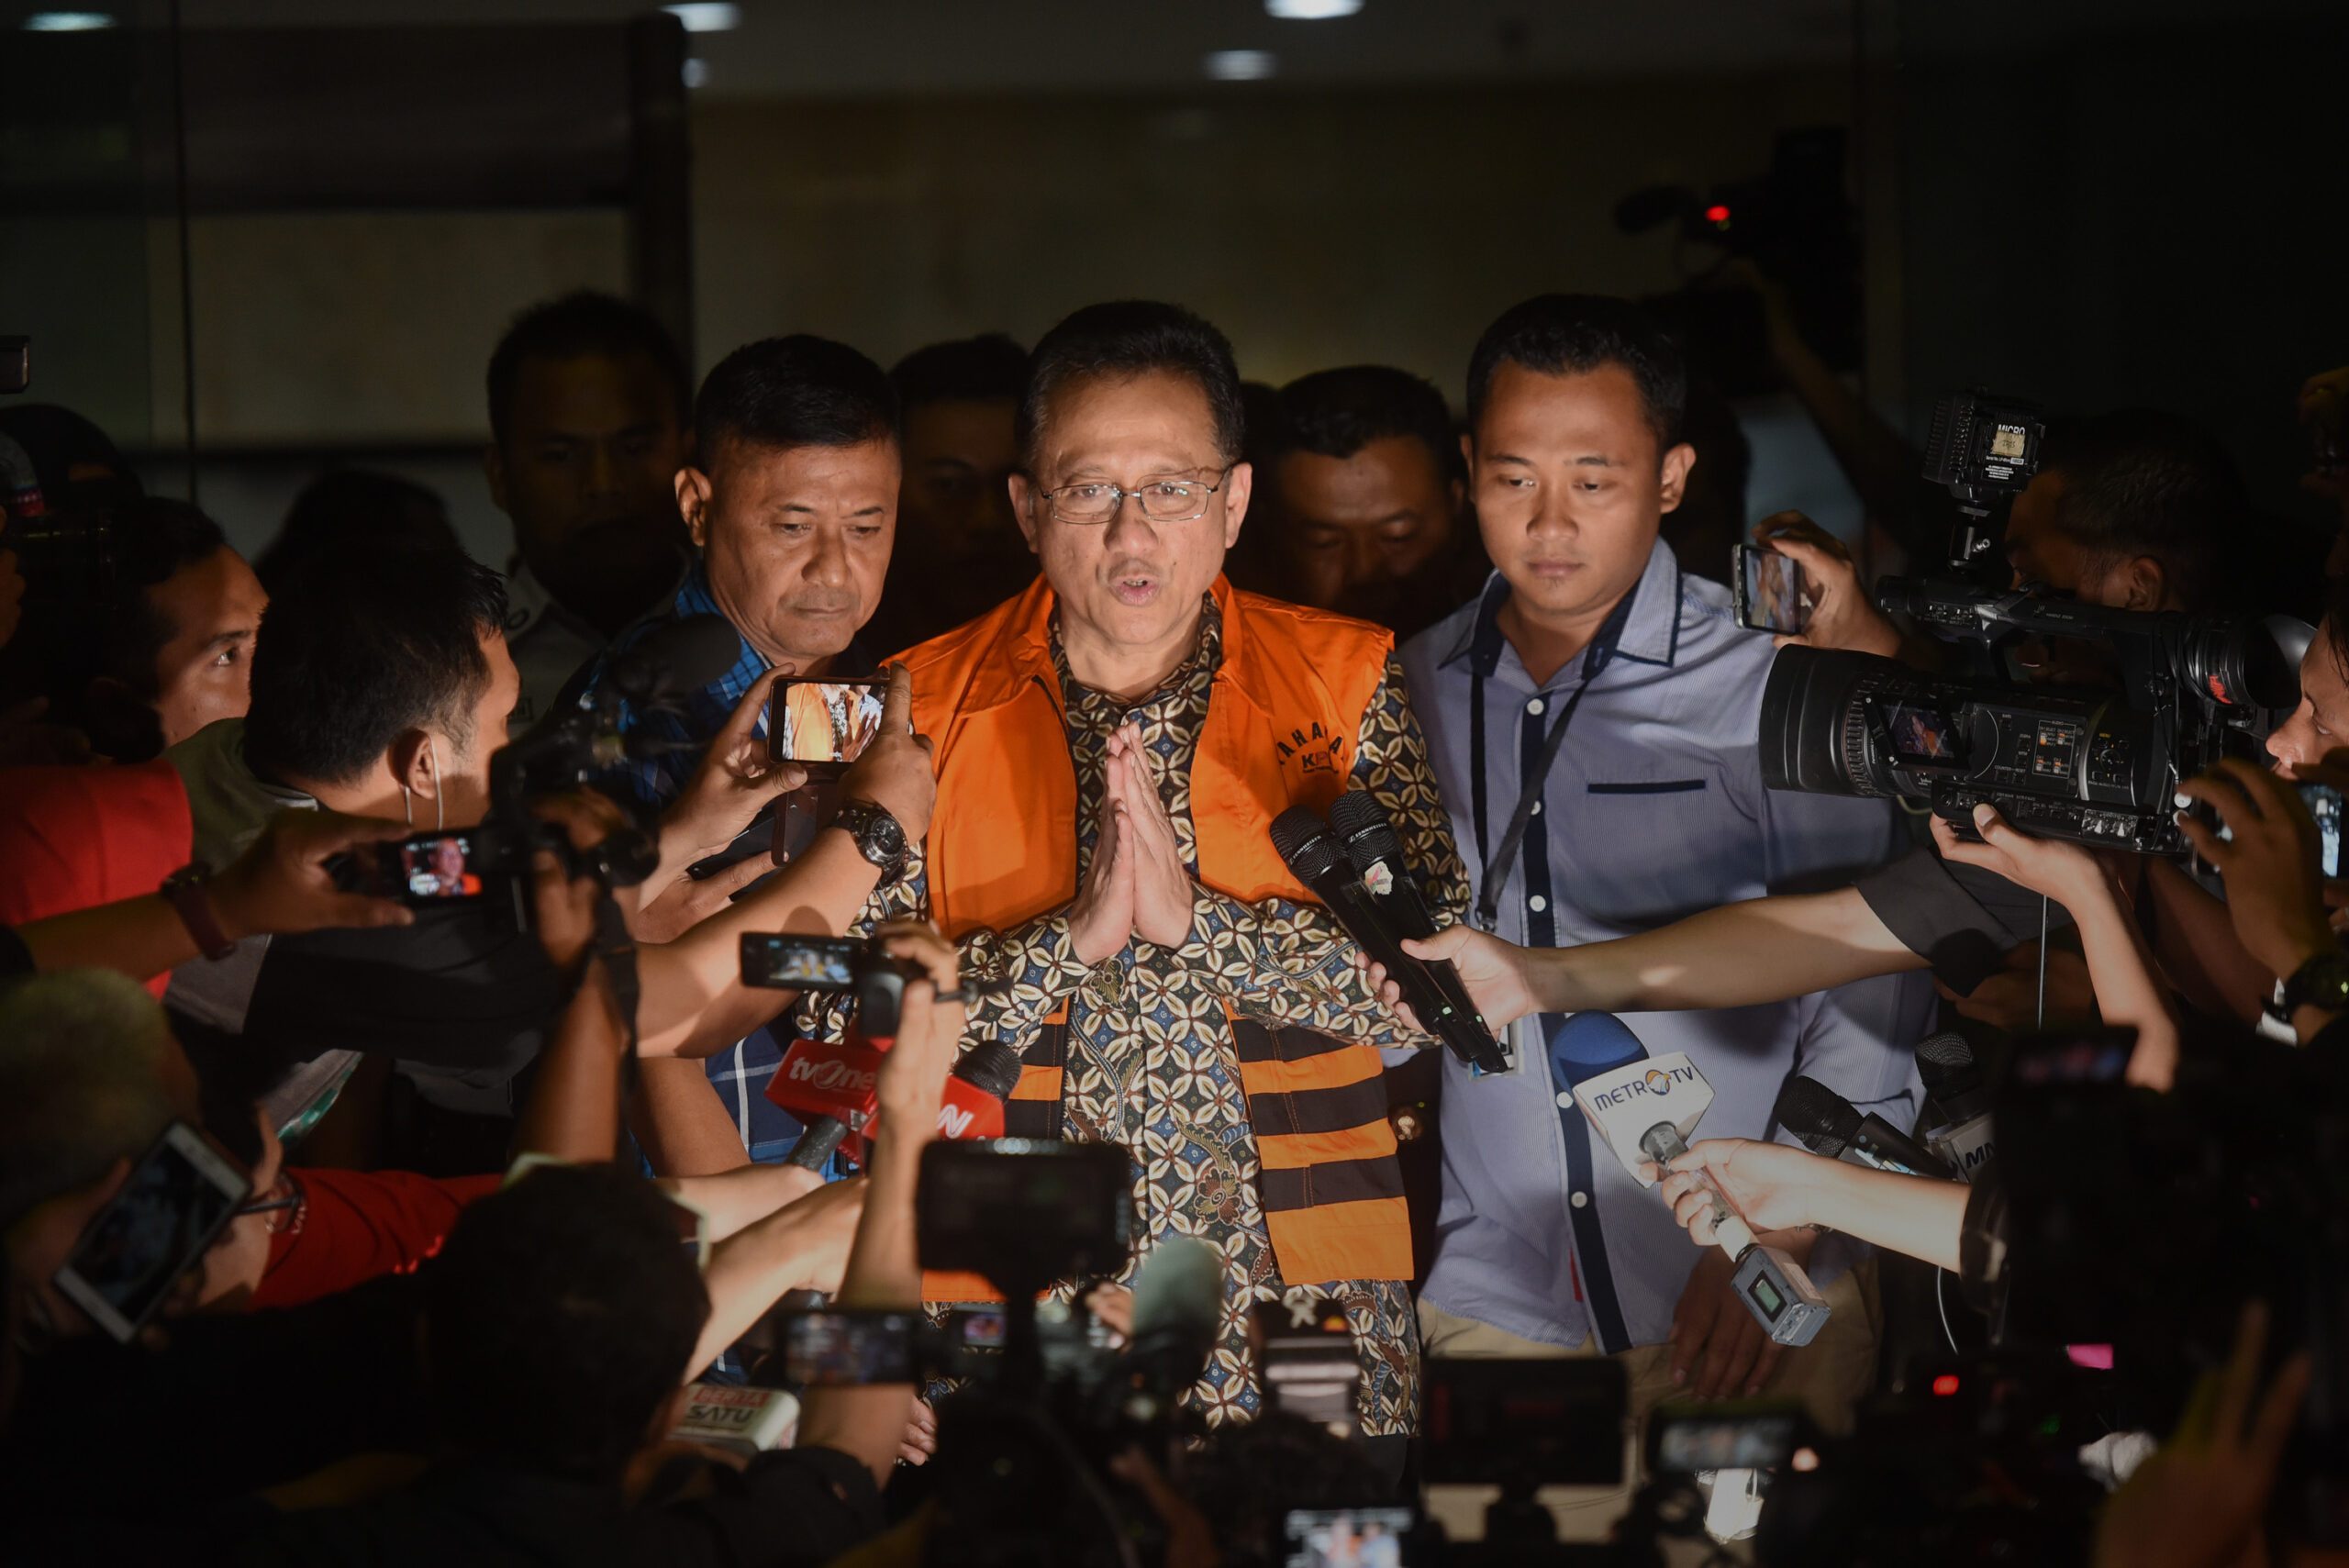 Irman Gusman ajukan penangguhan penahanan